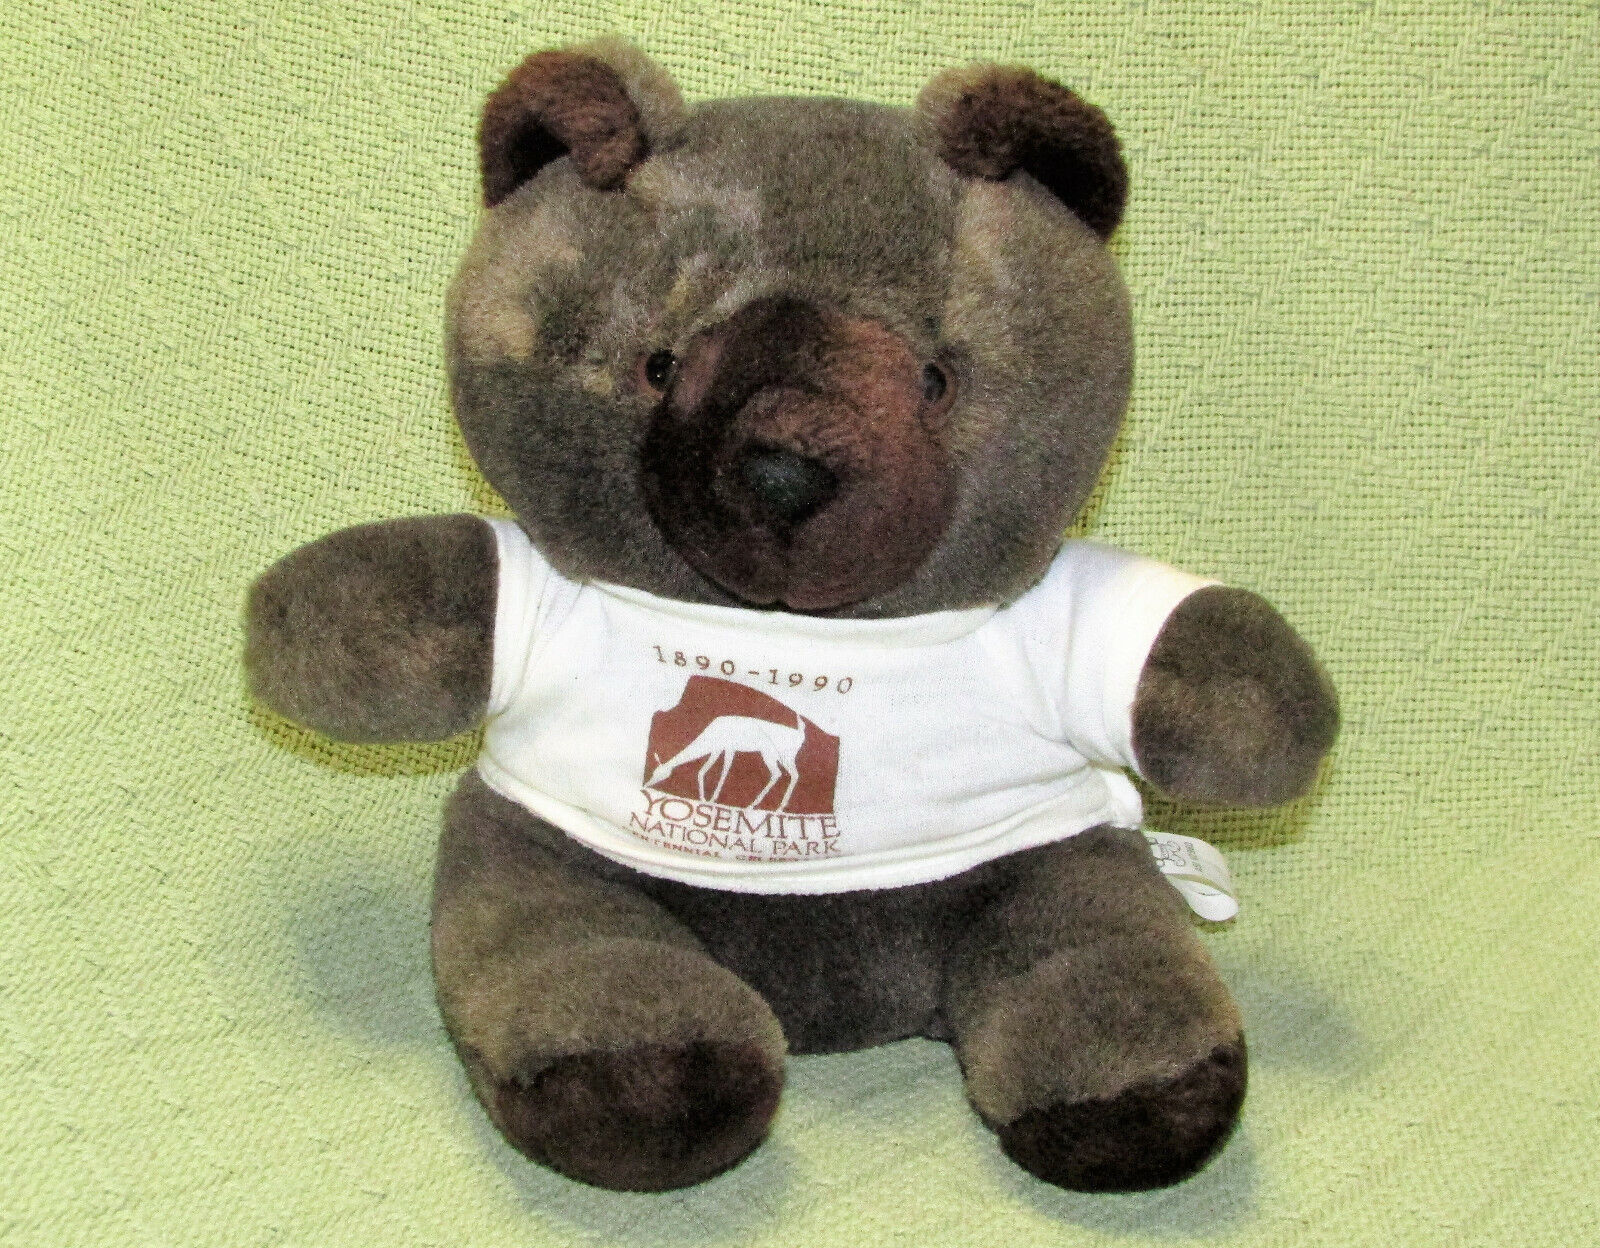 1990 YOSEMITE TEDDY BEAR PLUSH 9" STUFFED ANIMAL BROWN WHITE SHIRT VINTAGE ASI - £8.44 GBP